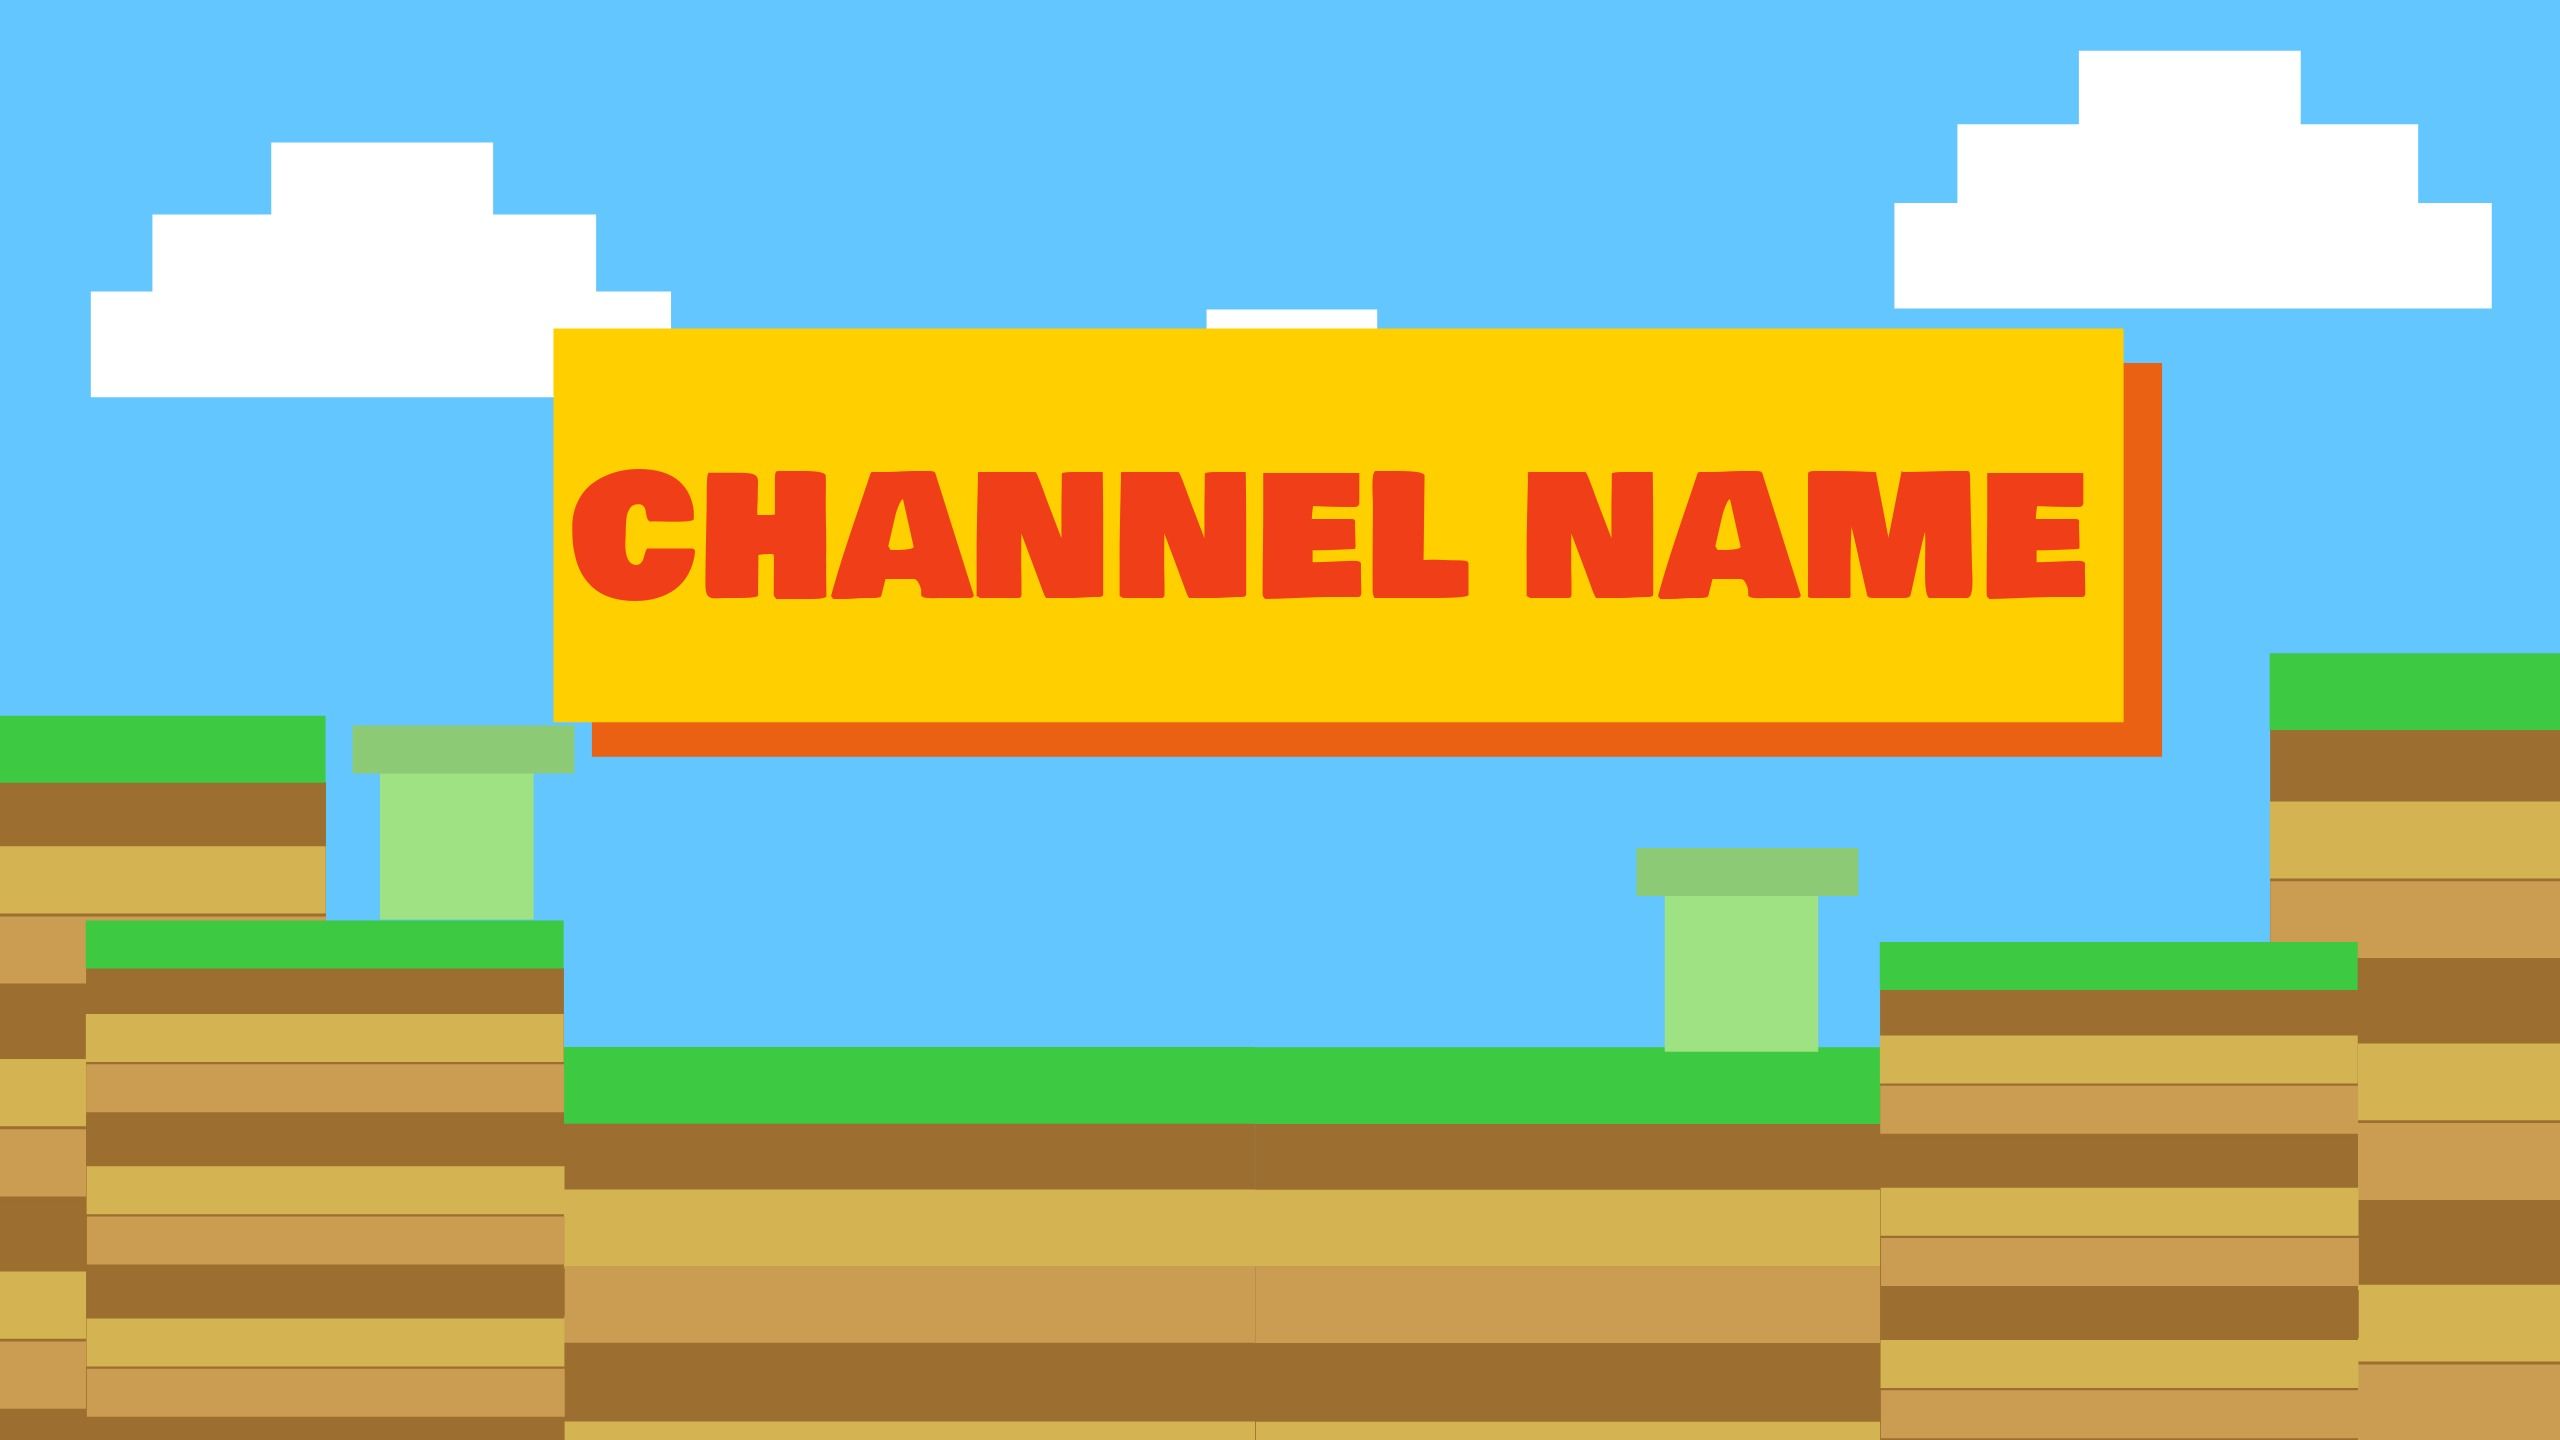 Plantilla de banner de youtube editable inspirada en videojuegos coloridos